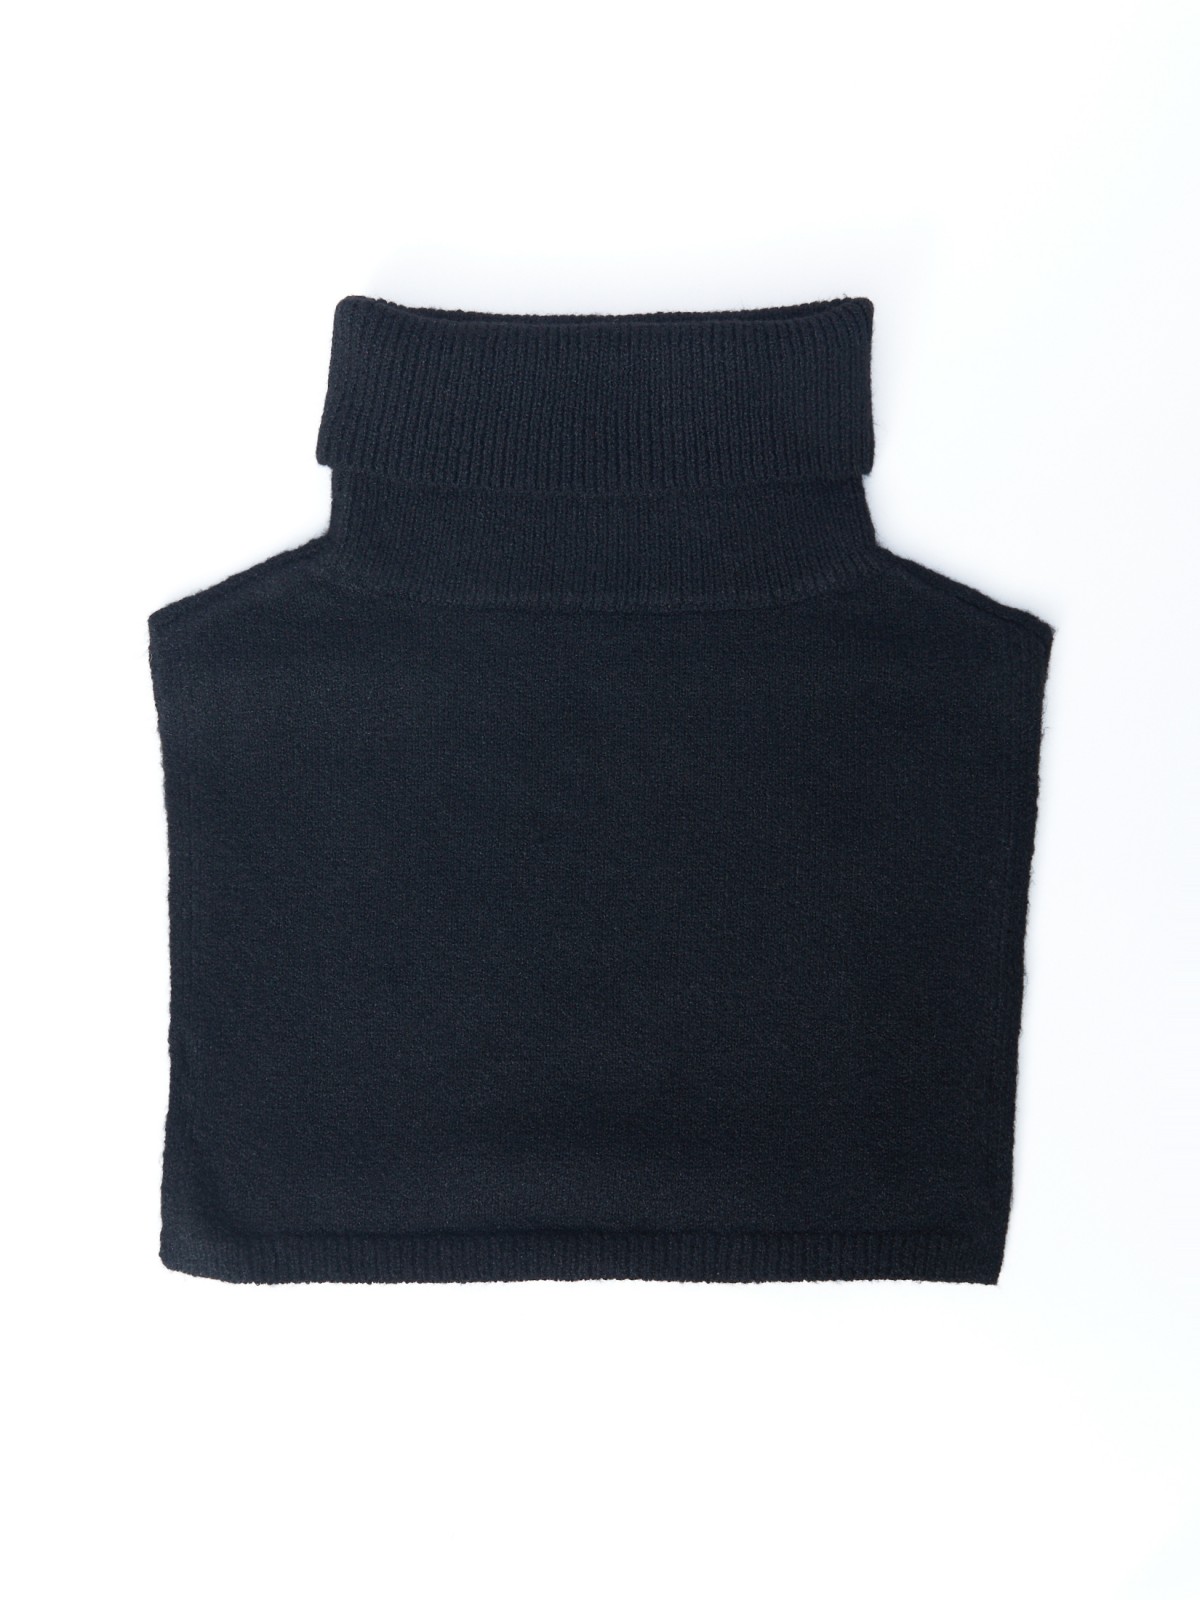 Платок (шарф) zolla 02333917J275, цвет черный, размер No_size - фото 5